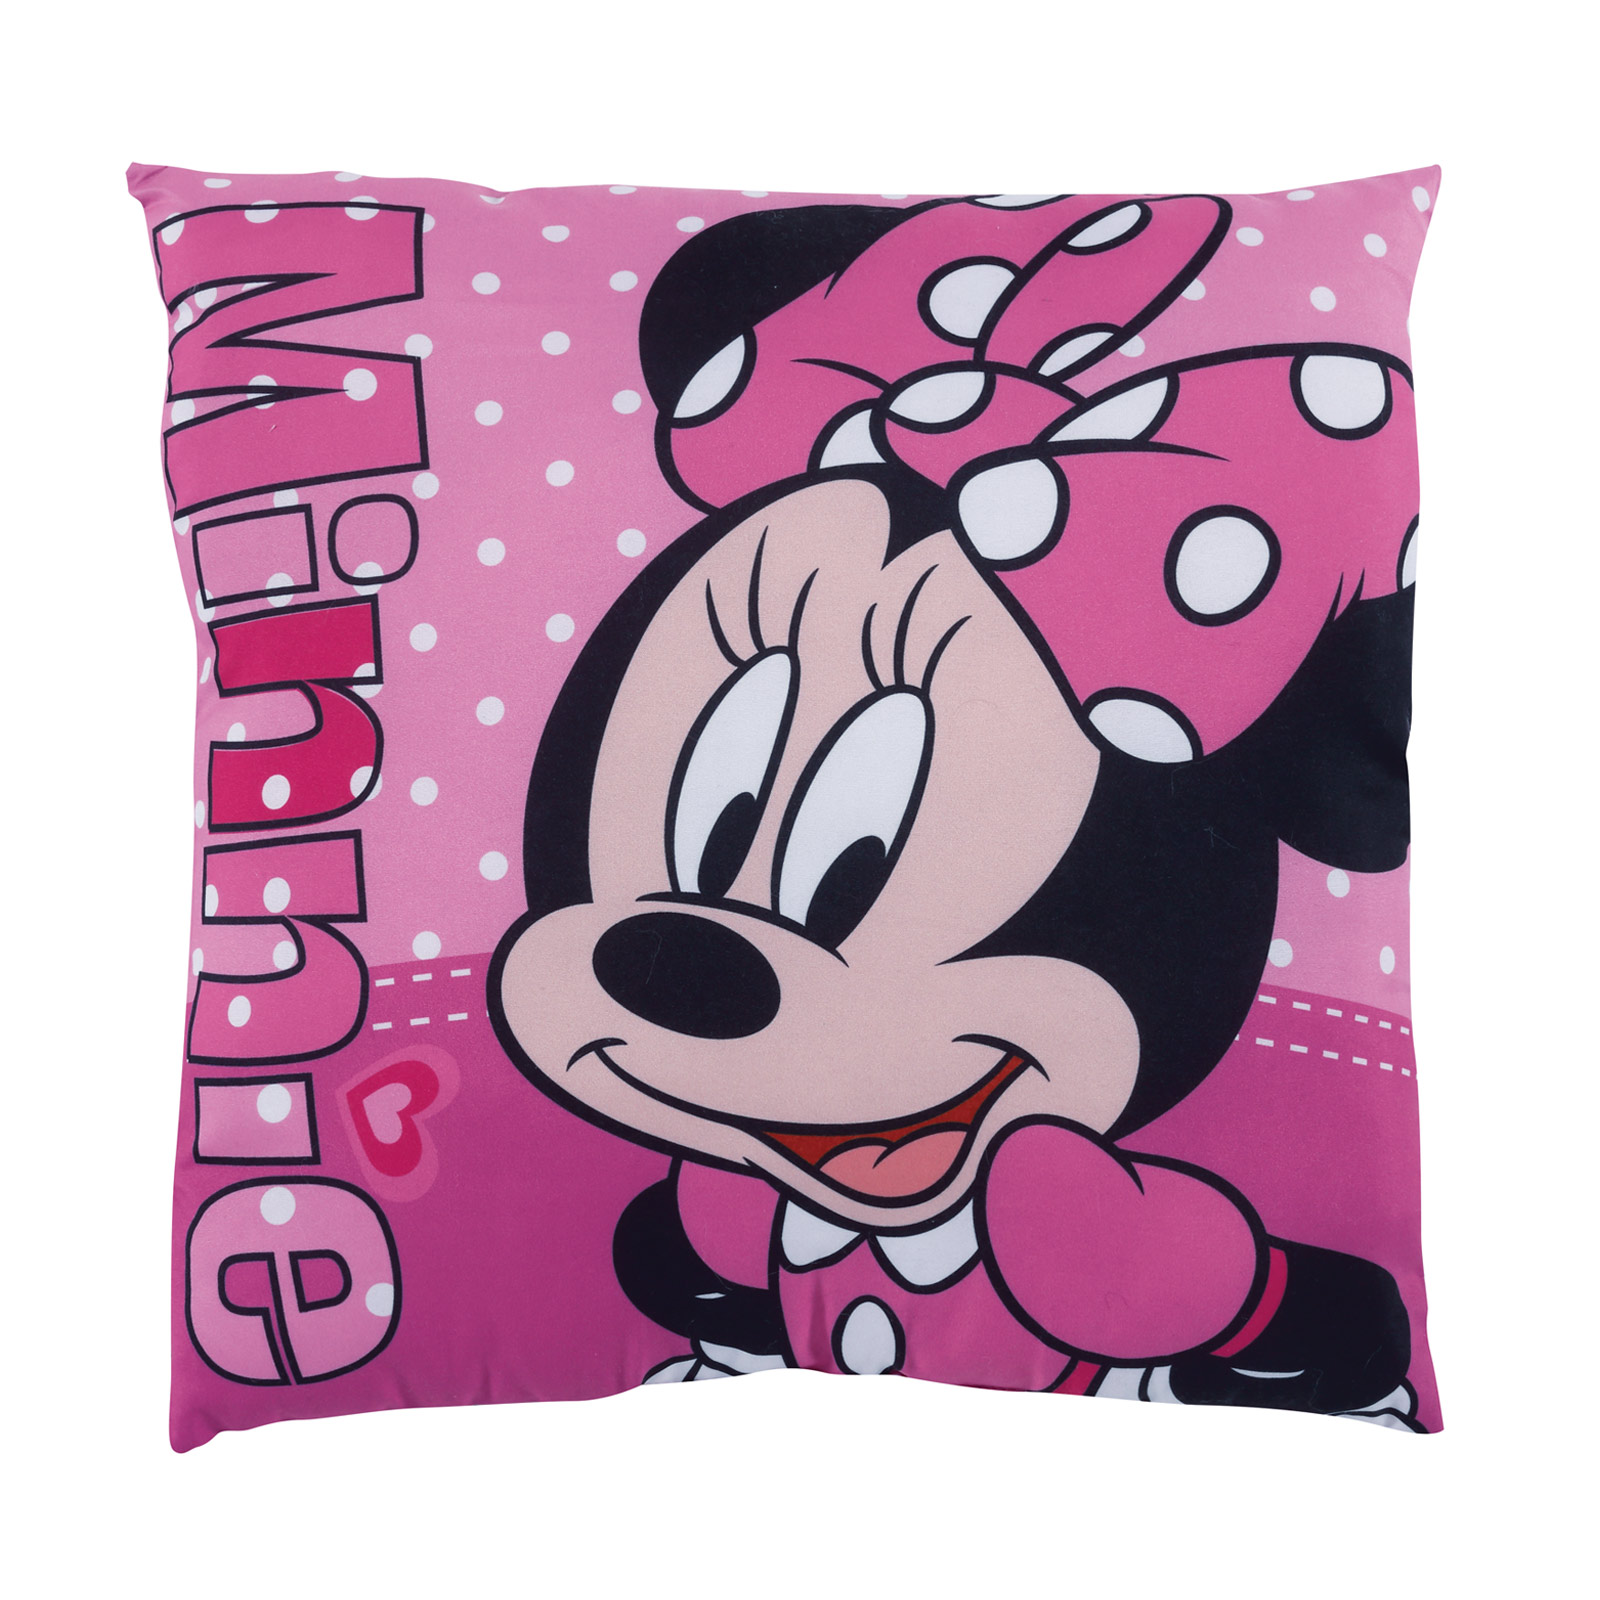 Μαξιλάρι Διακοσμητικό Microfiber 40x40εκ. Minnie 5511 Disney (Ύφασμα: Microfiber, Χρώμα: Ροζ) - Disney - 533404005511